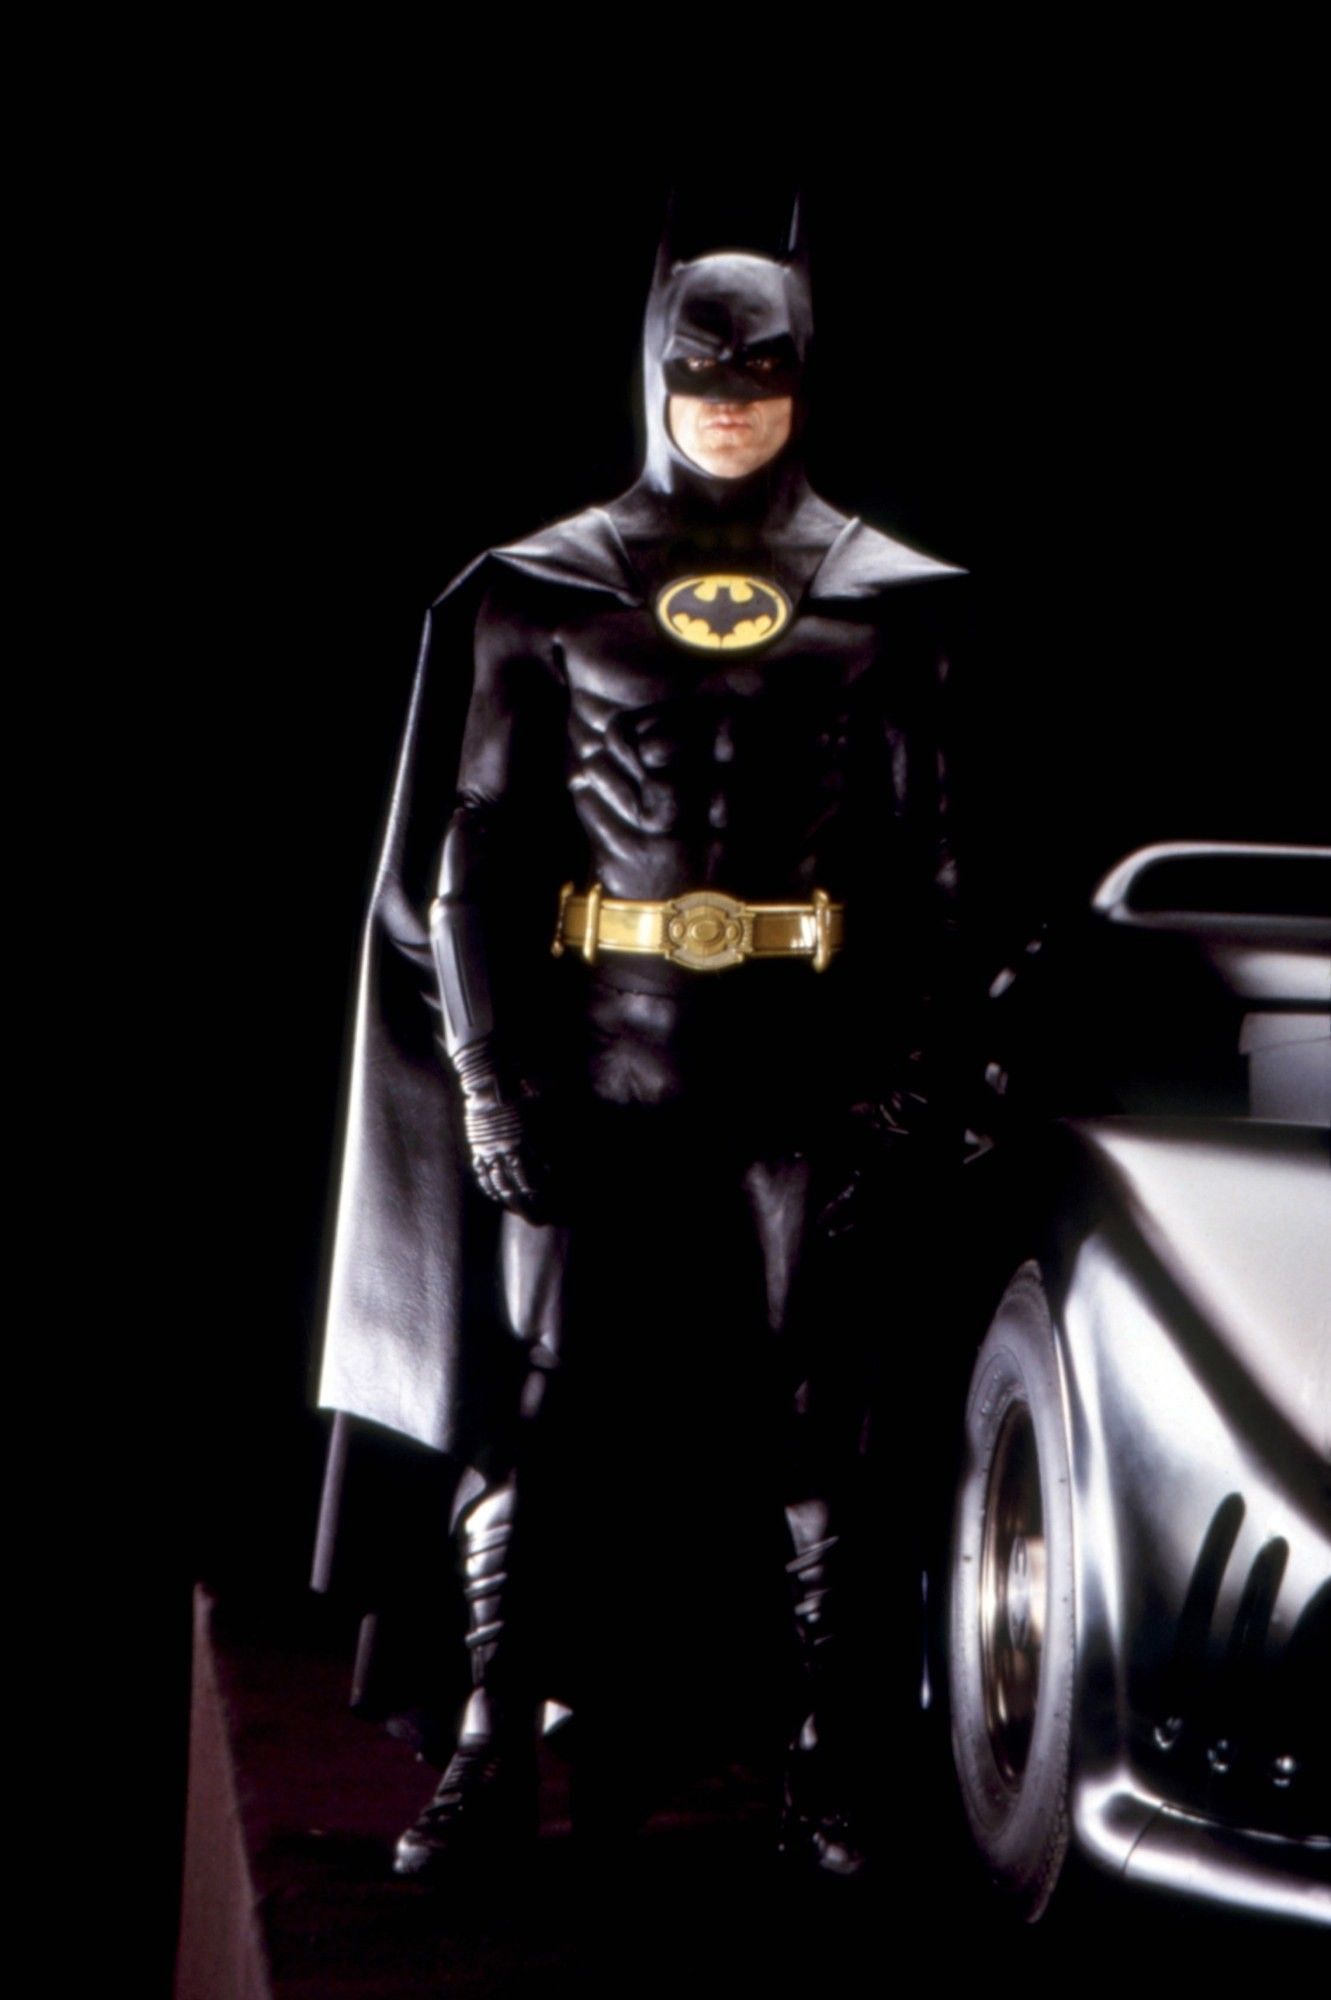 Batman 1989 Wallpaper. Batman, The new batman, Superhero